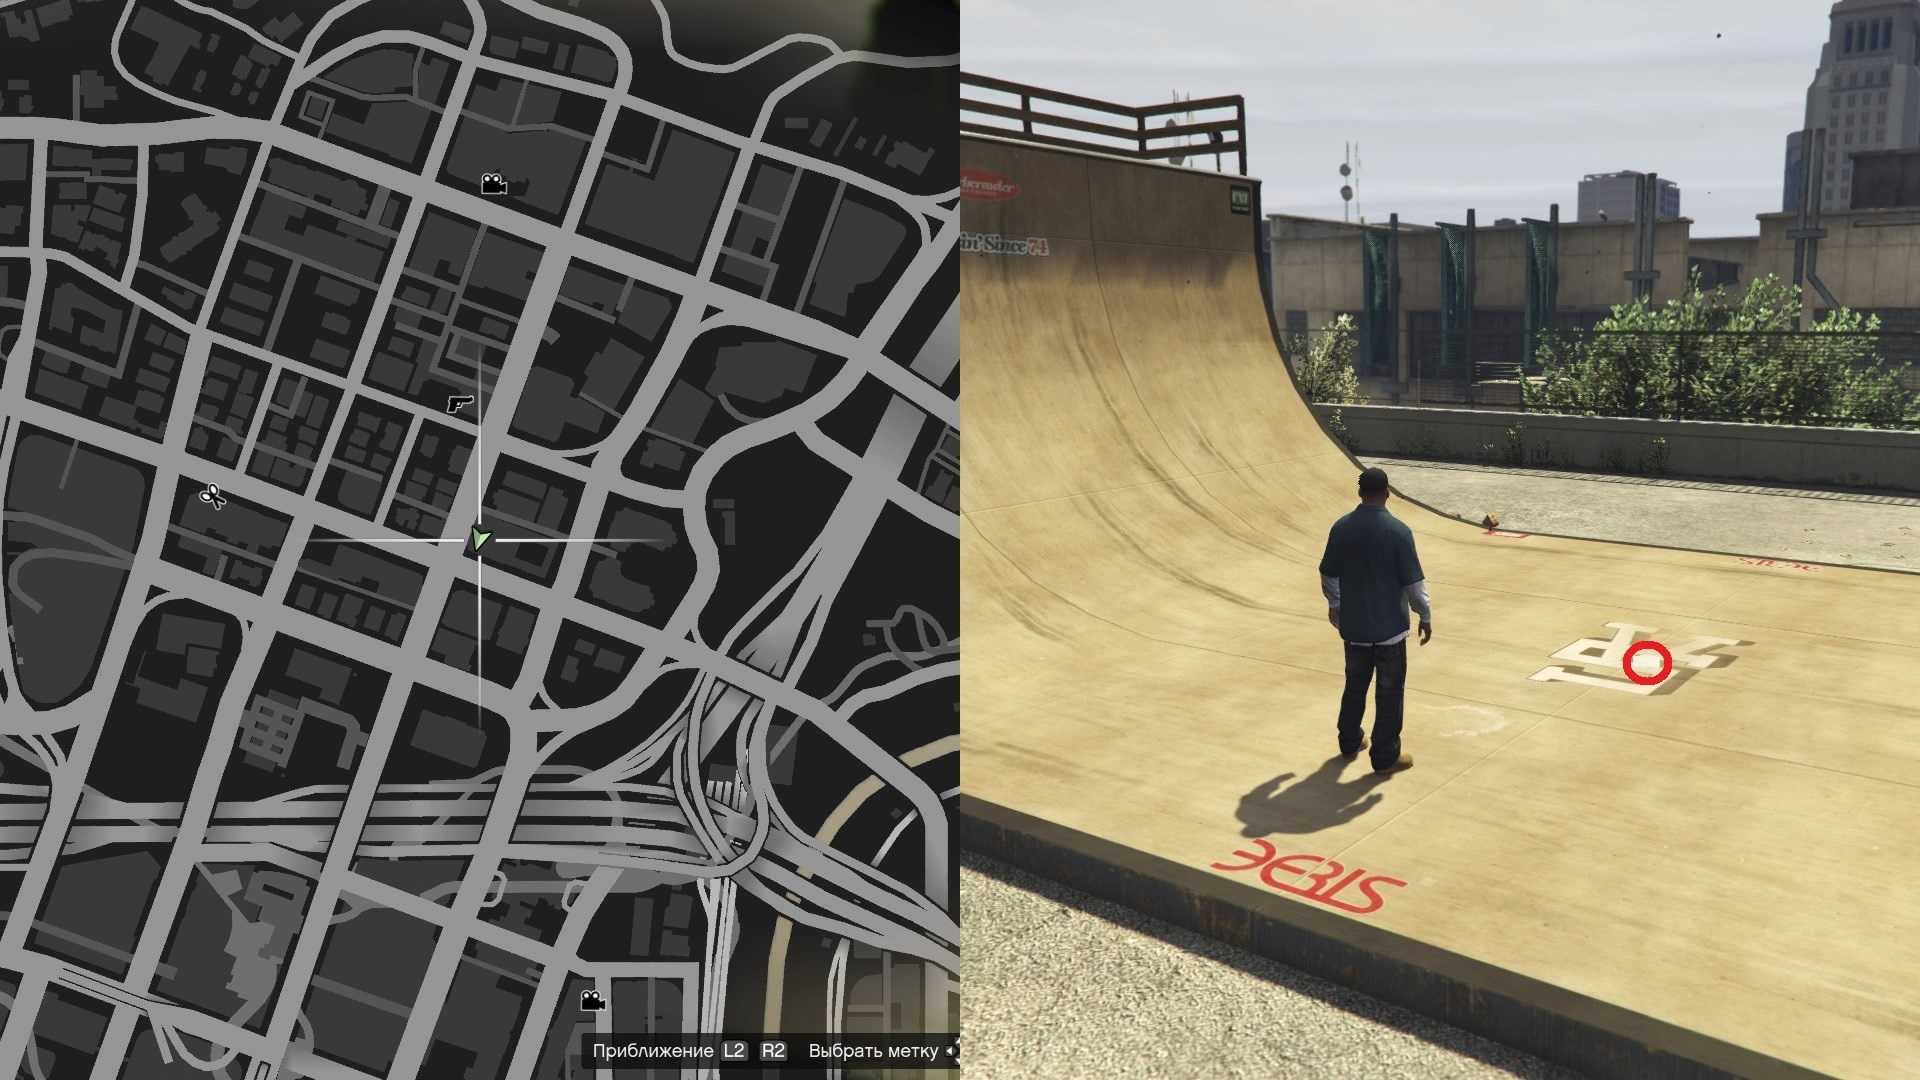 Дом семьи Гроув-стрит можно найти в Grand Theft Auto 5 и GTA: San Andreas, но версии GTA 5 не хватает некоторого очарования